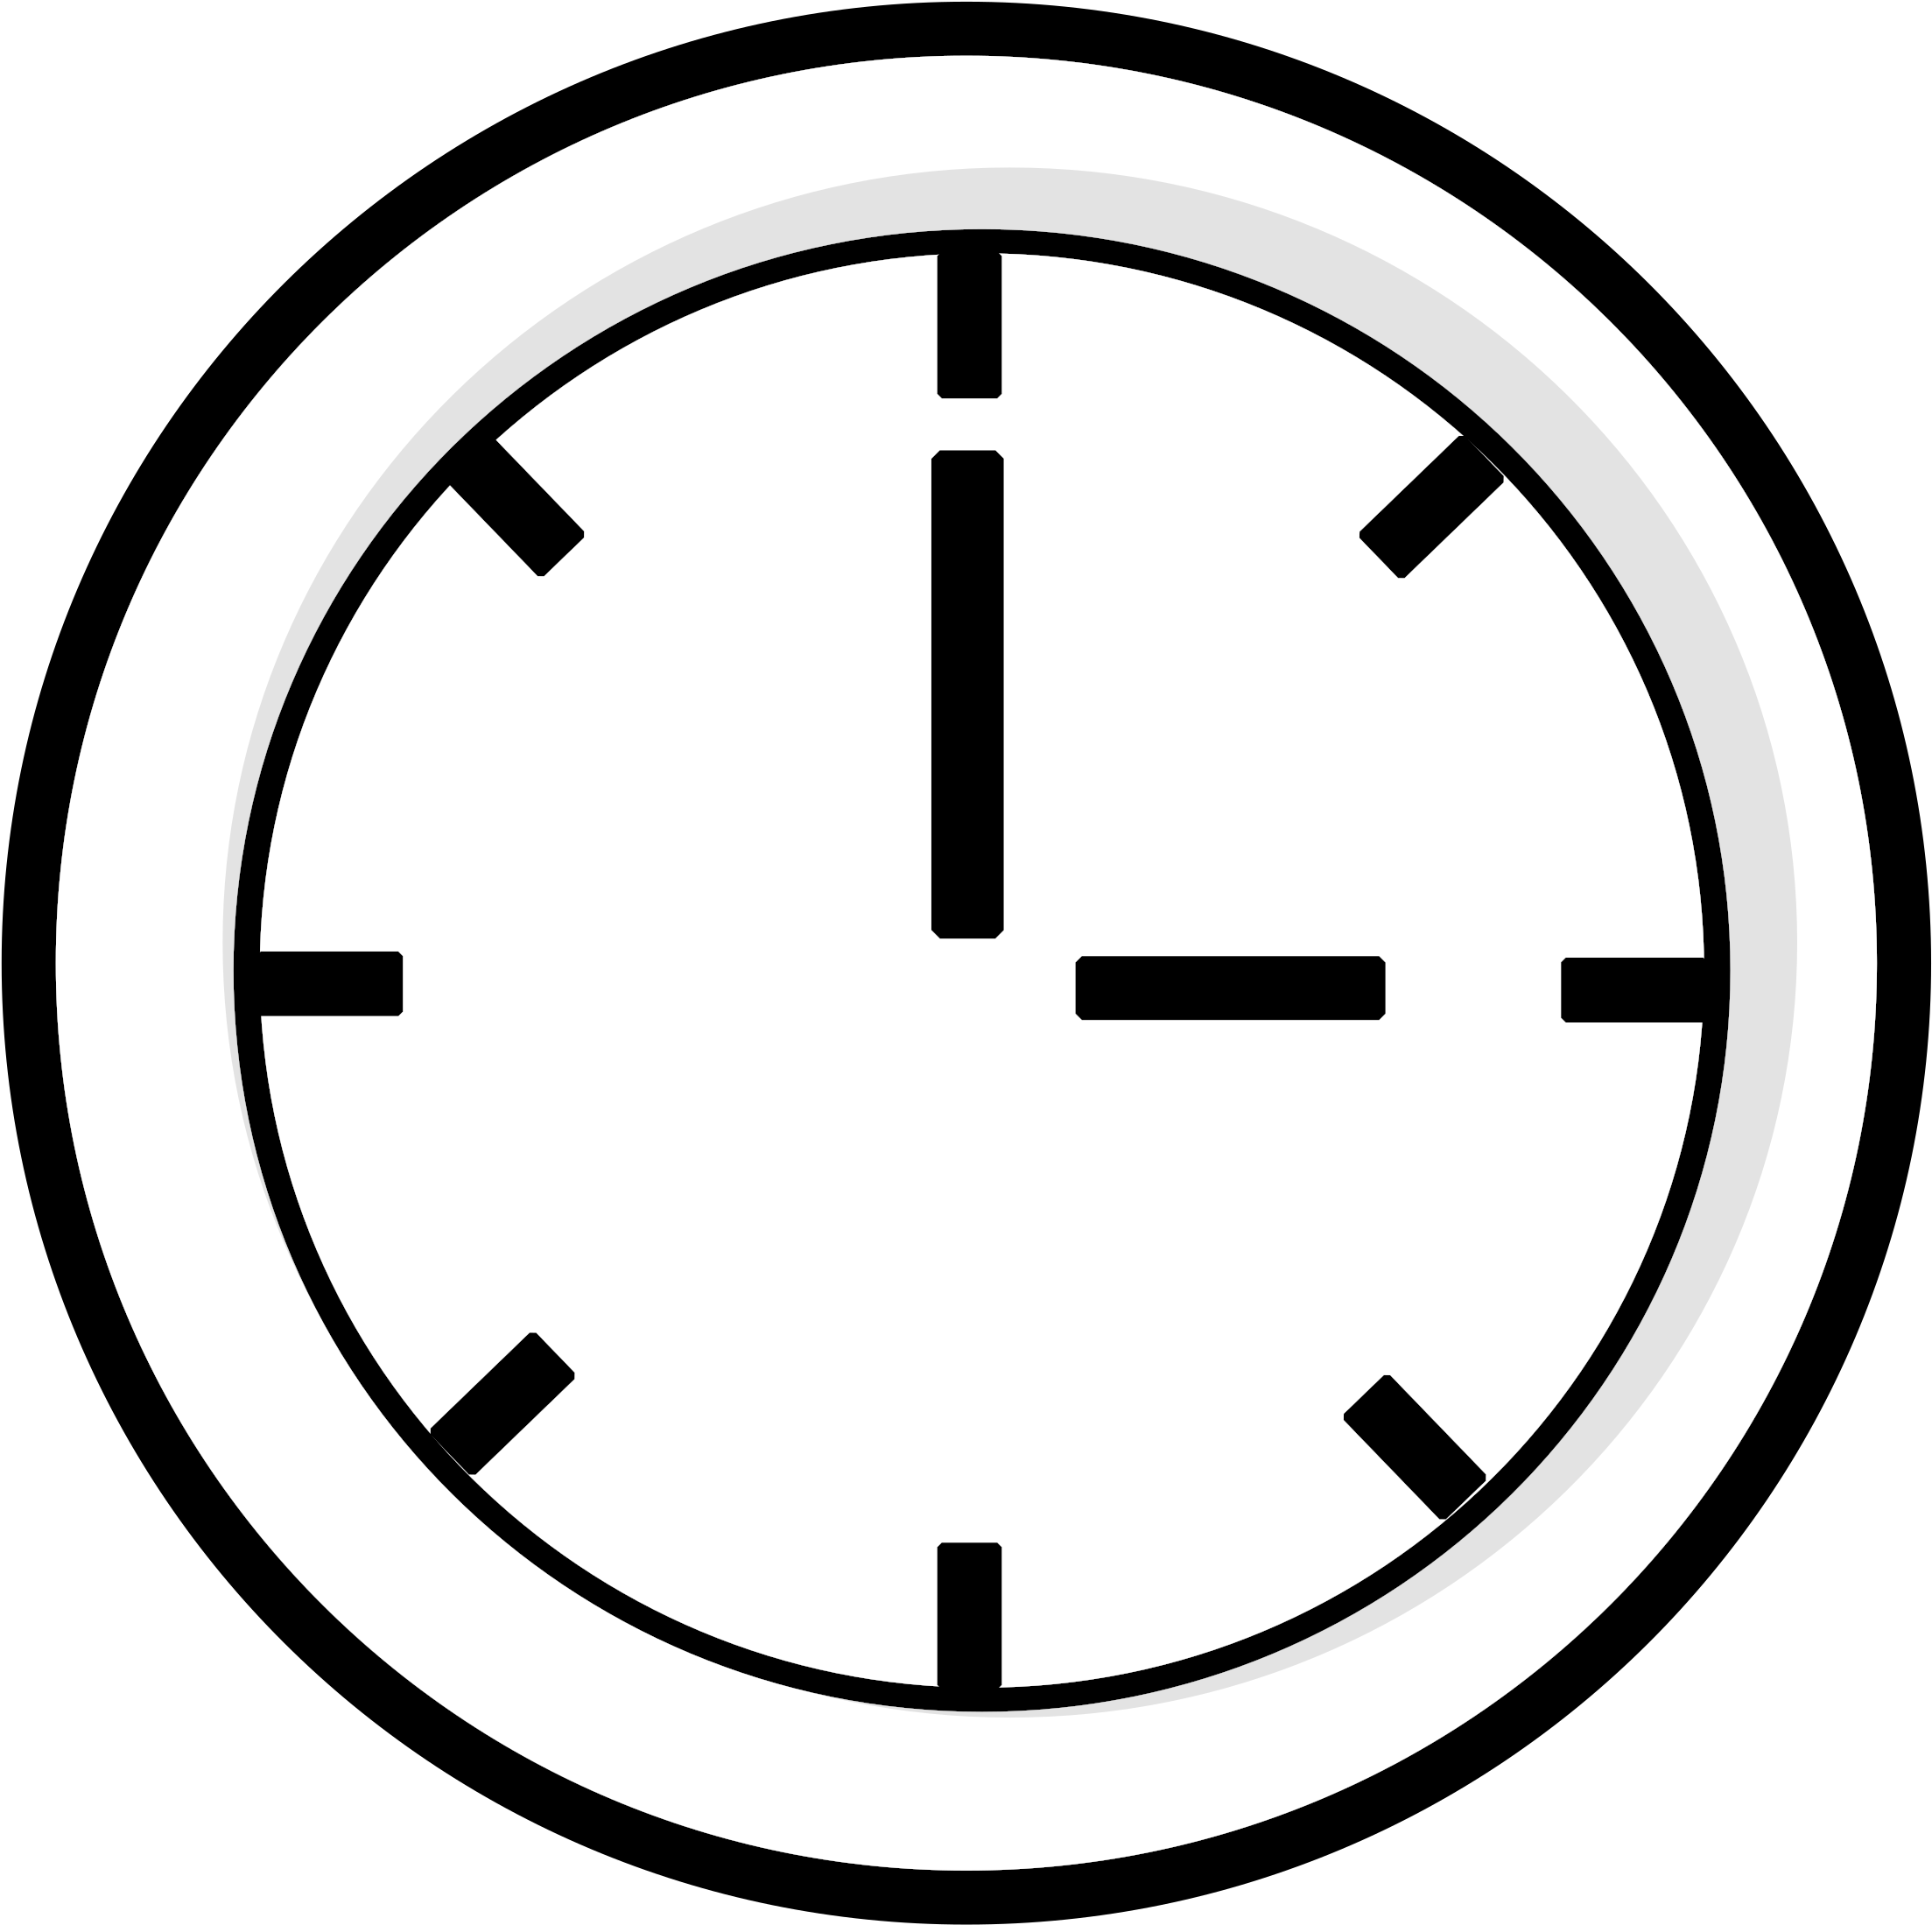 Знак часы 10 10. Значок часов. Часы символ. Пиктограмма часов. Иконка часы на прозрачном фоне.